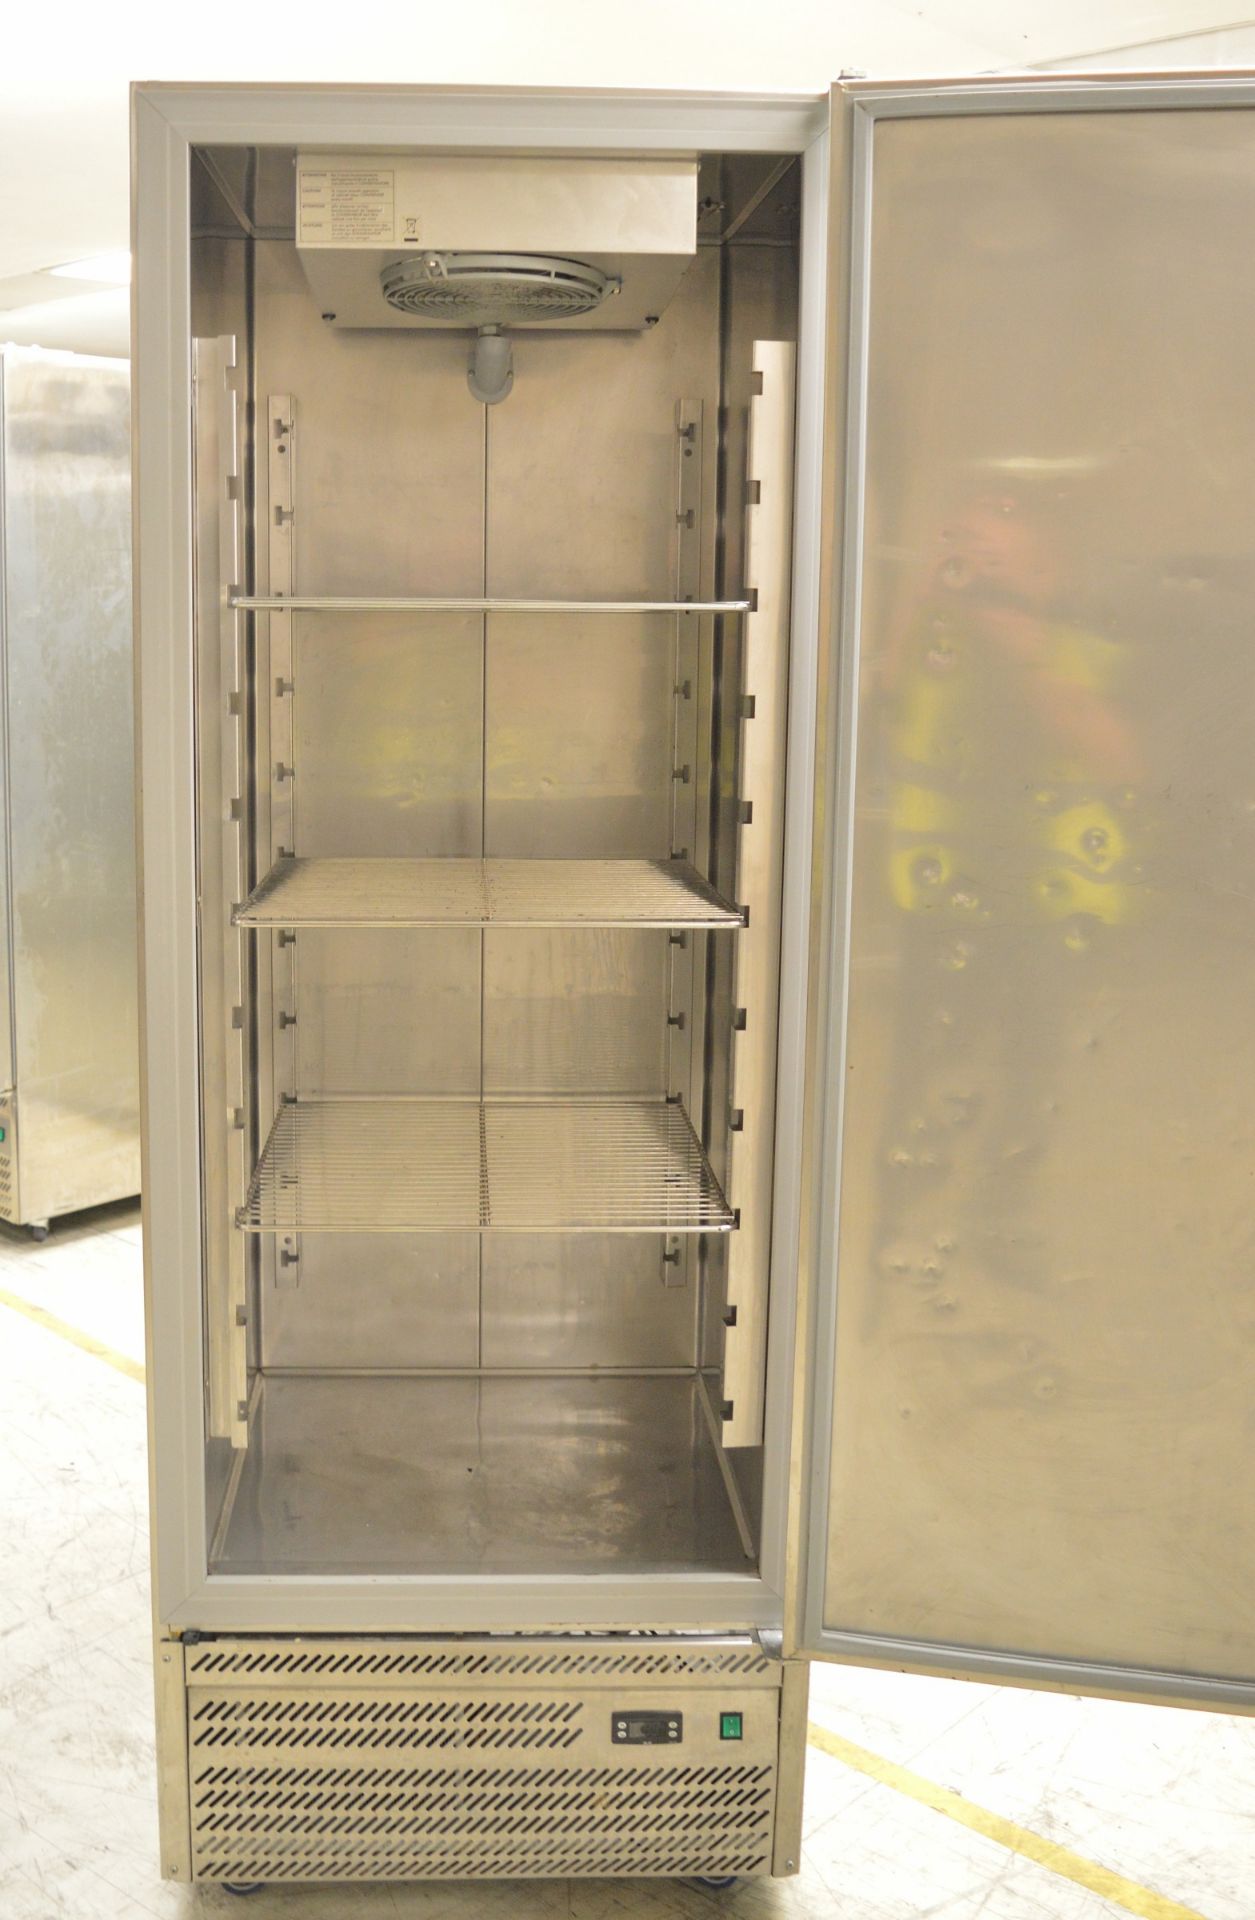 Studio 54 Oasis 600 Single Door Refrigerator - Image 2 of 8